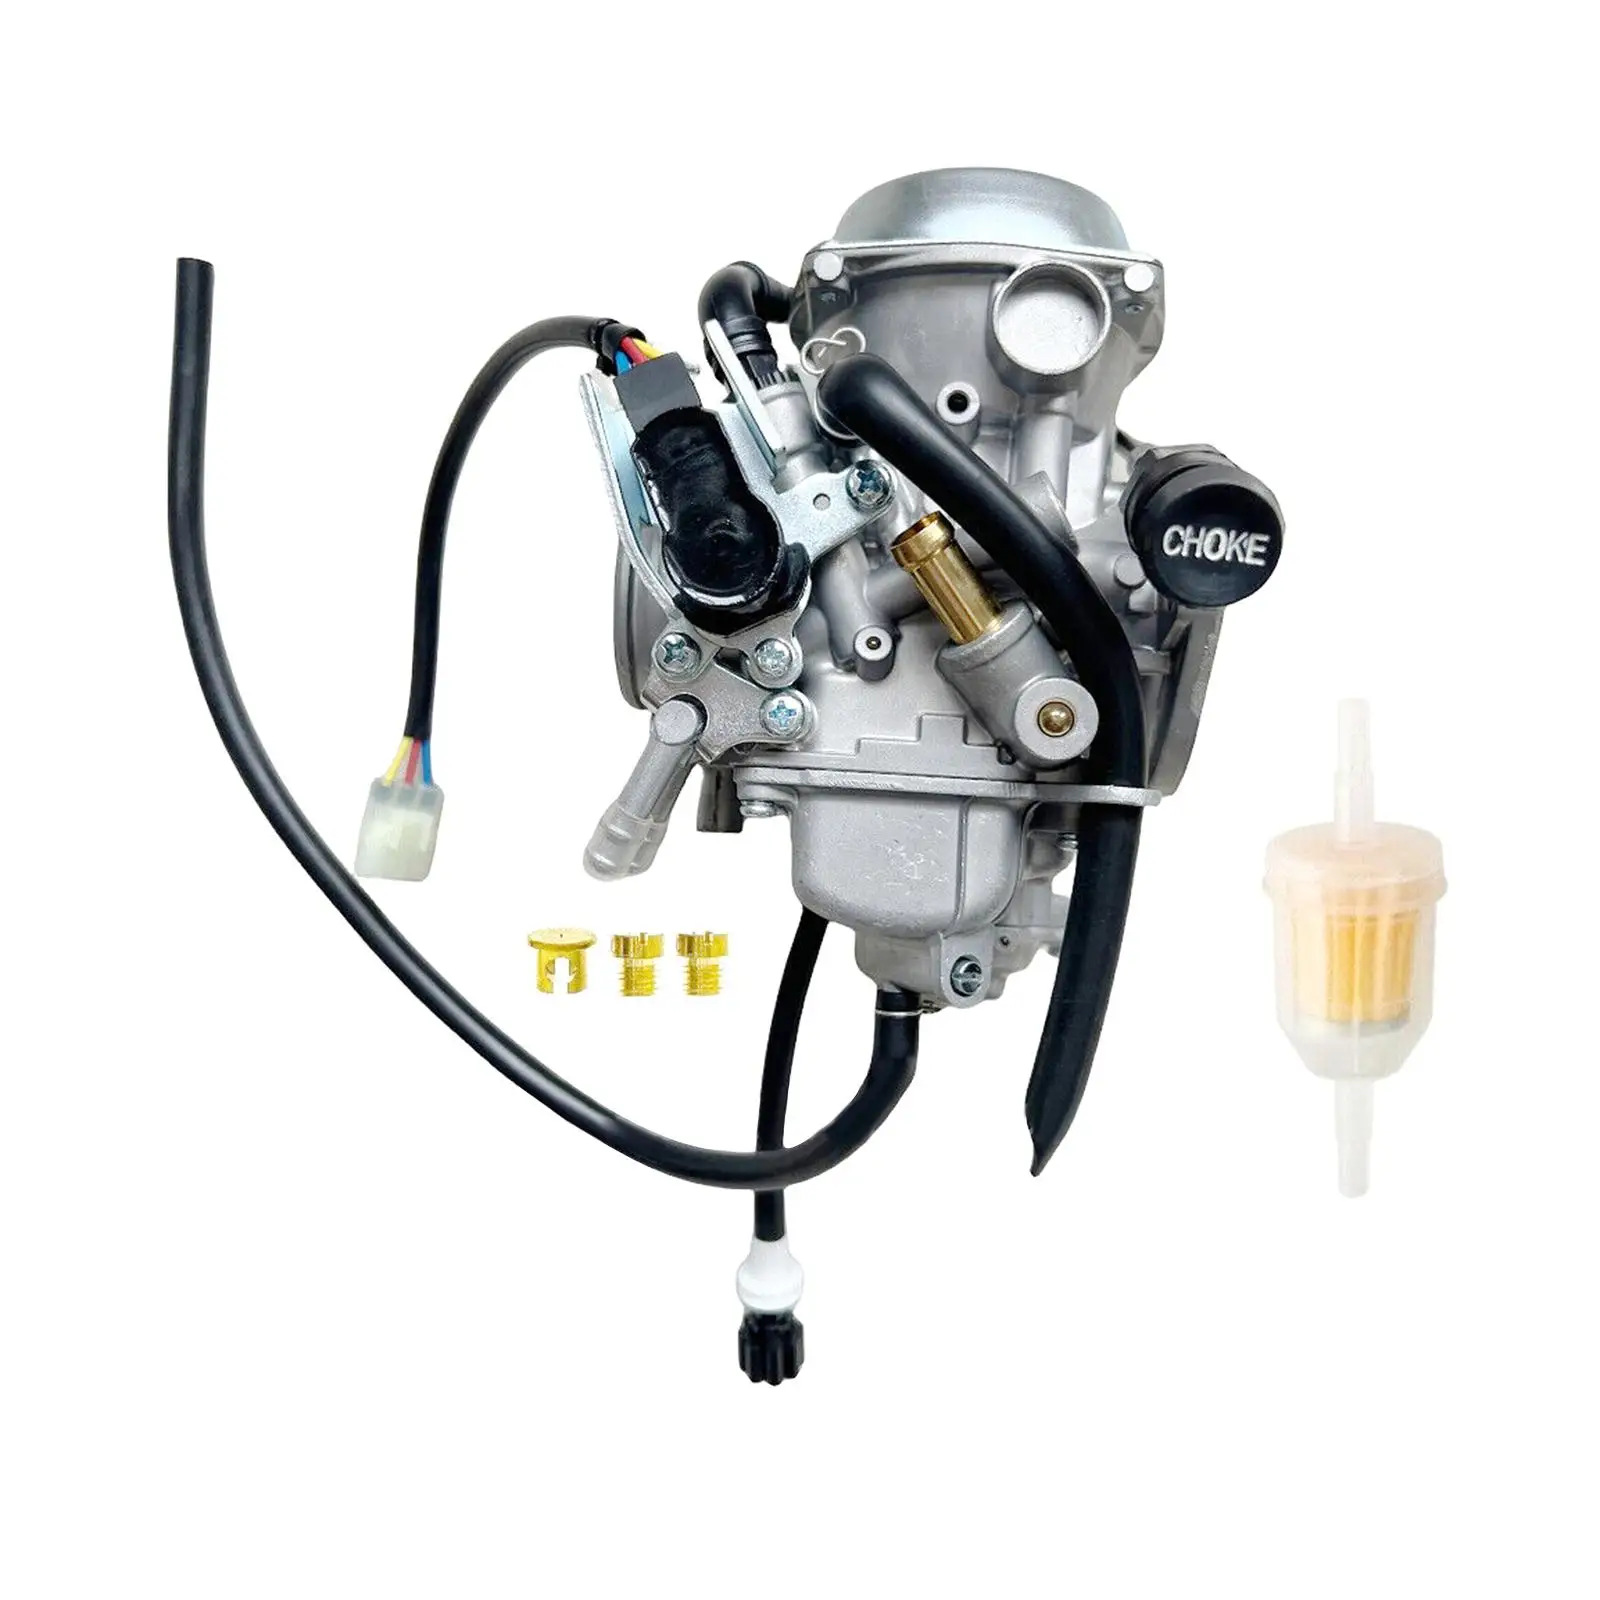 

Carburetor Alloy Accessories 16100-mea-a51 for Honda Vtx1300C Vtx1300T